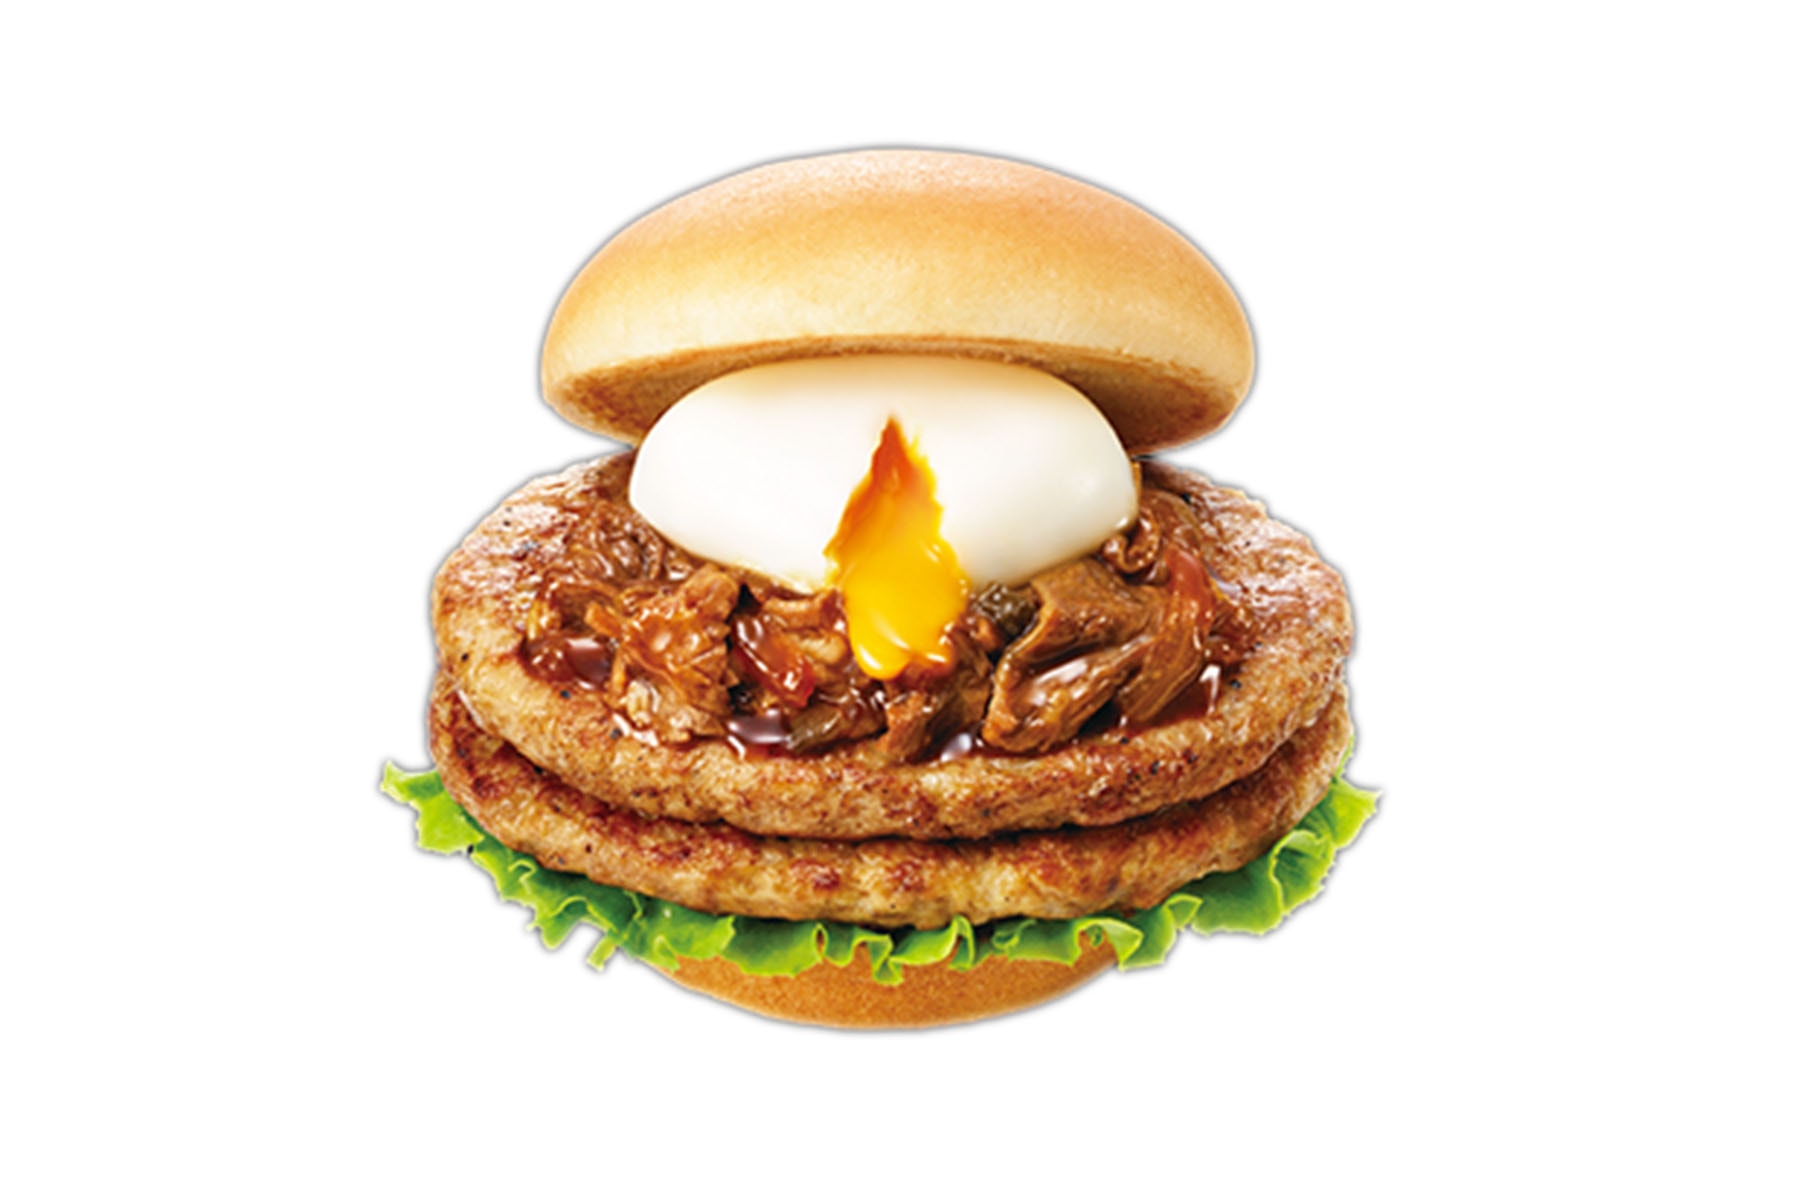 日本 Mos Burger 即將推出全新「雙層壽喜燒牛肉」漢堡